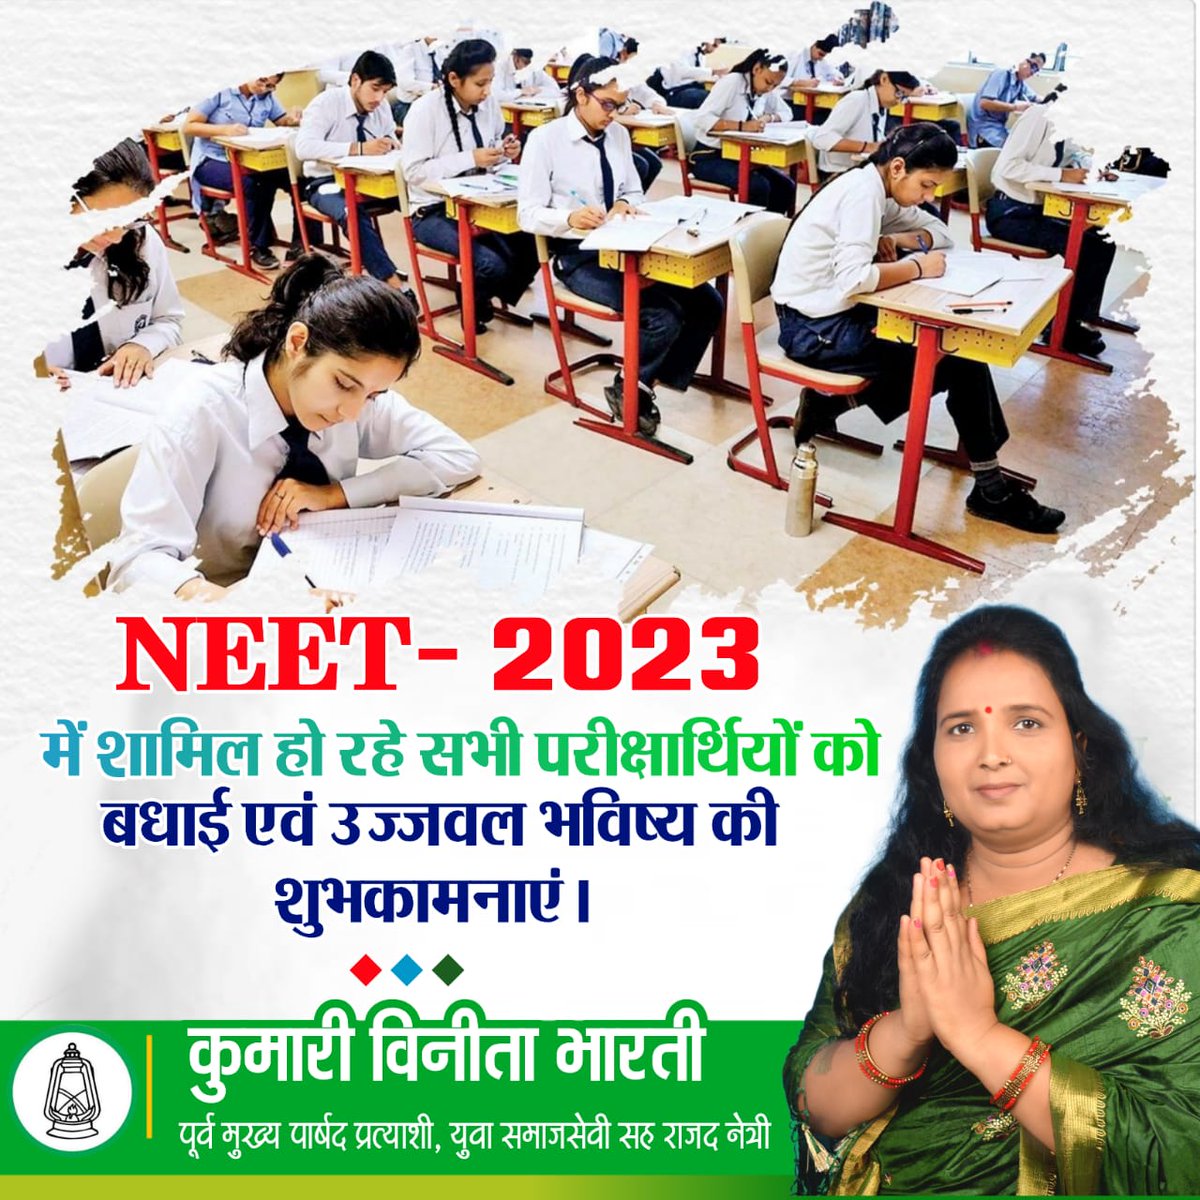 NEET- 2023 में शामिल हो रहे सभी परीक्षार्थियों को बधाई एवं उज्जवल भविष्य की शुभकामनाएं।
#neet2023exam